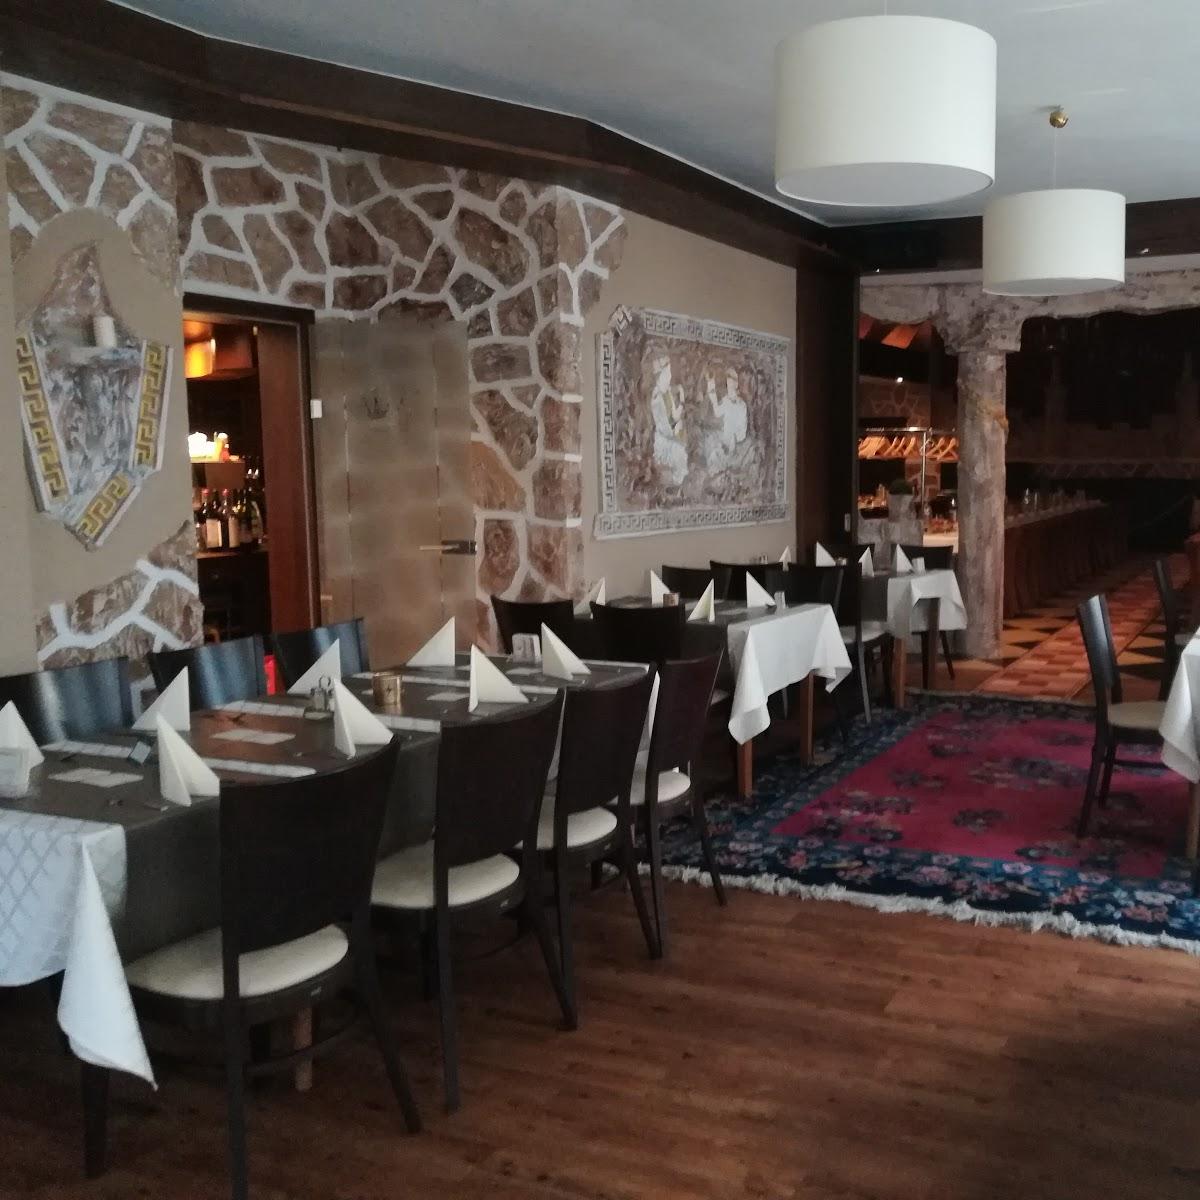 Restaurant "Restaurant Rhodos - Griechische Spezialitäten" in Nordwalde